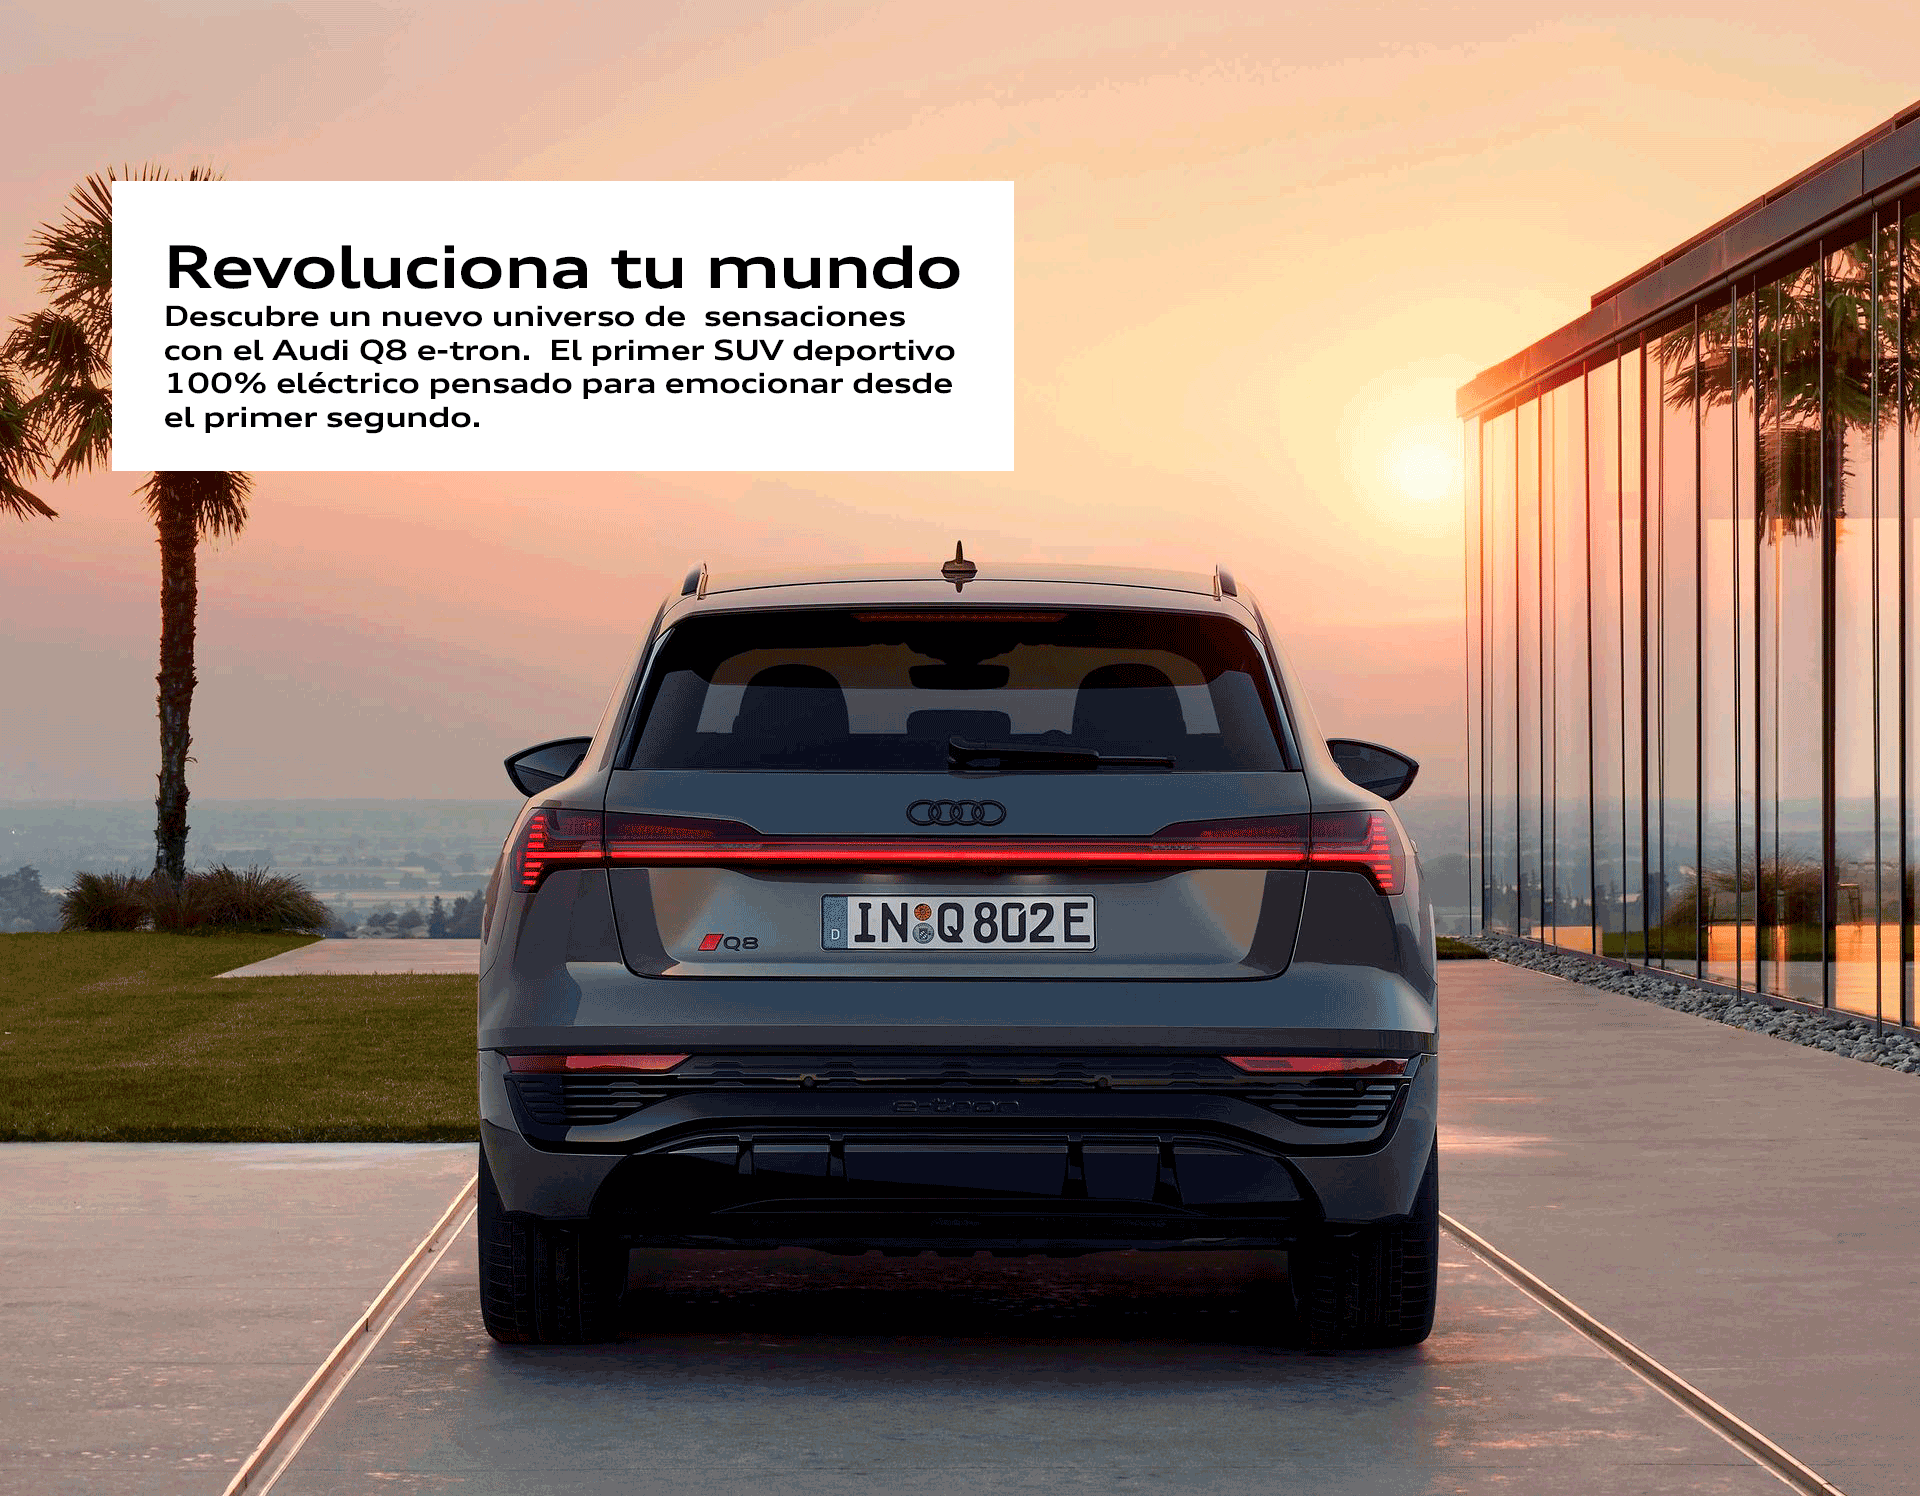 Audi-Q8-etron-revoluciona-tu-mundo